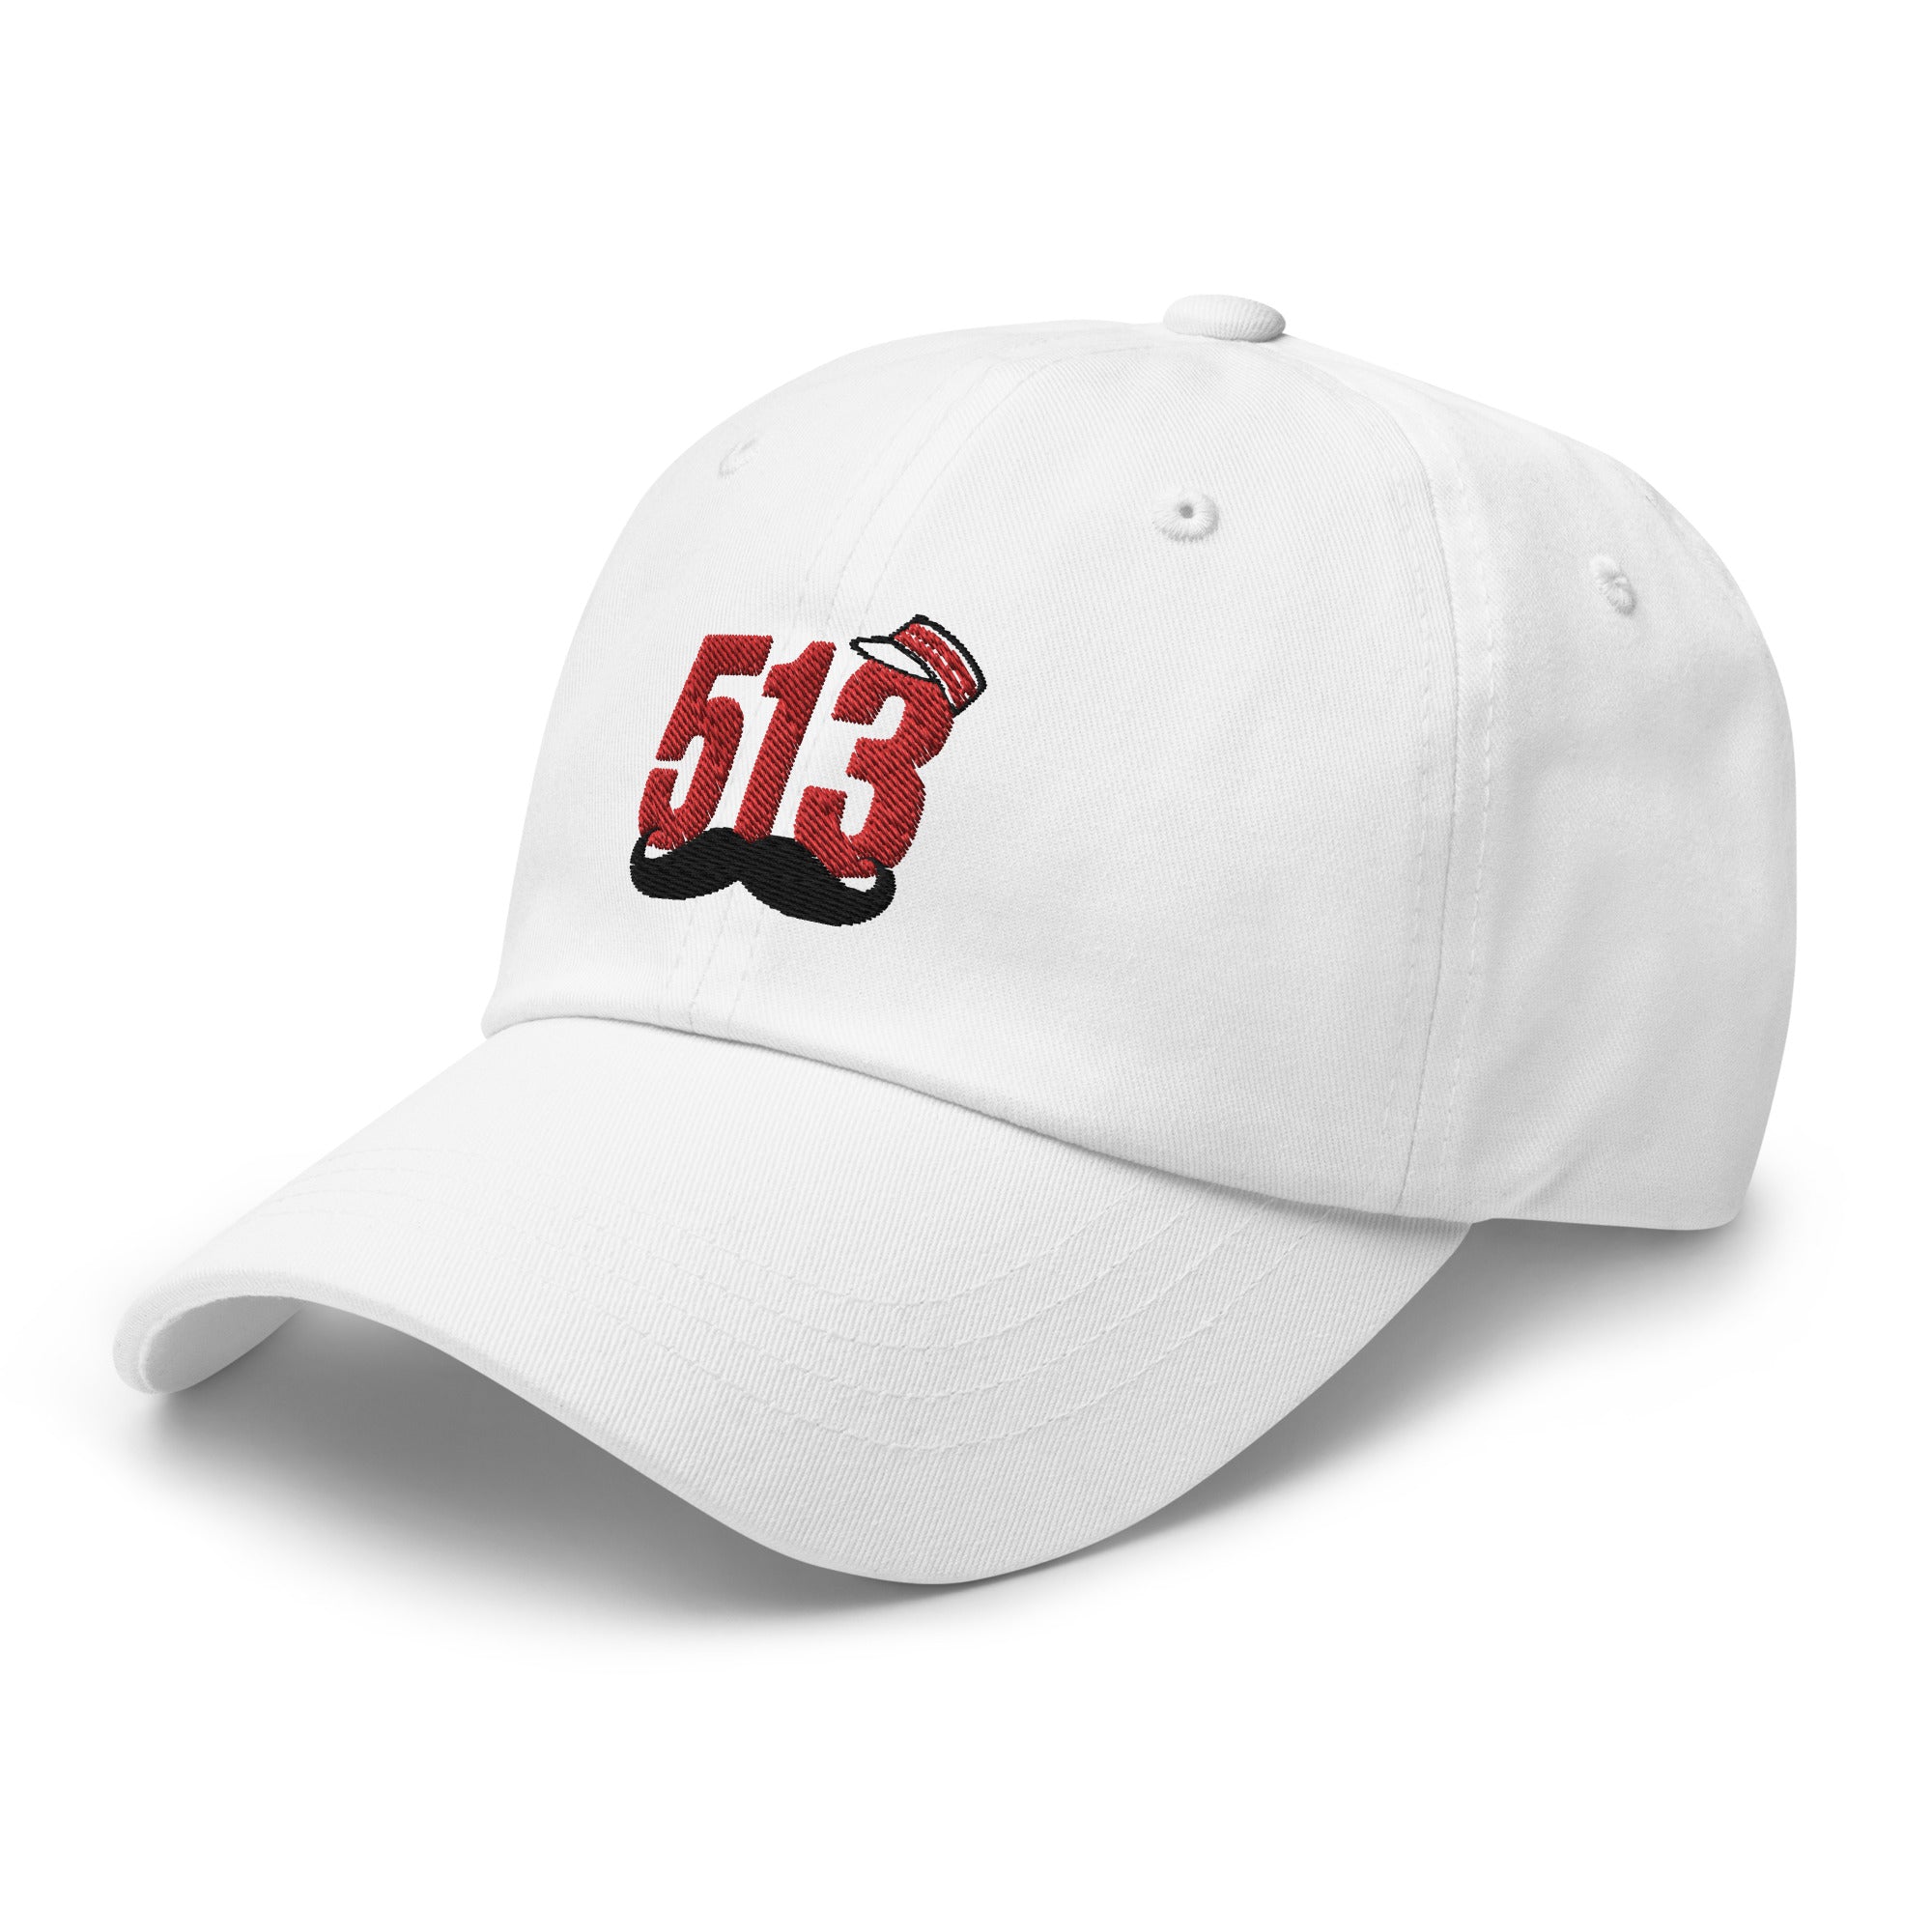 513 Reds hat